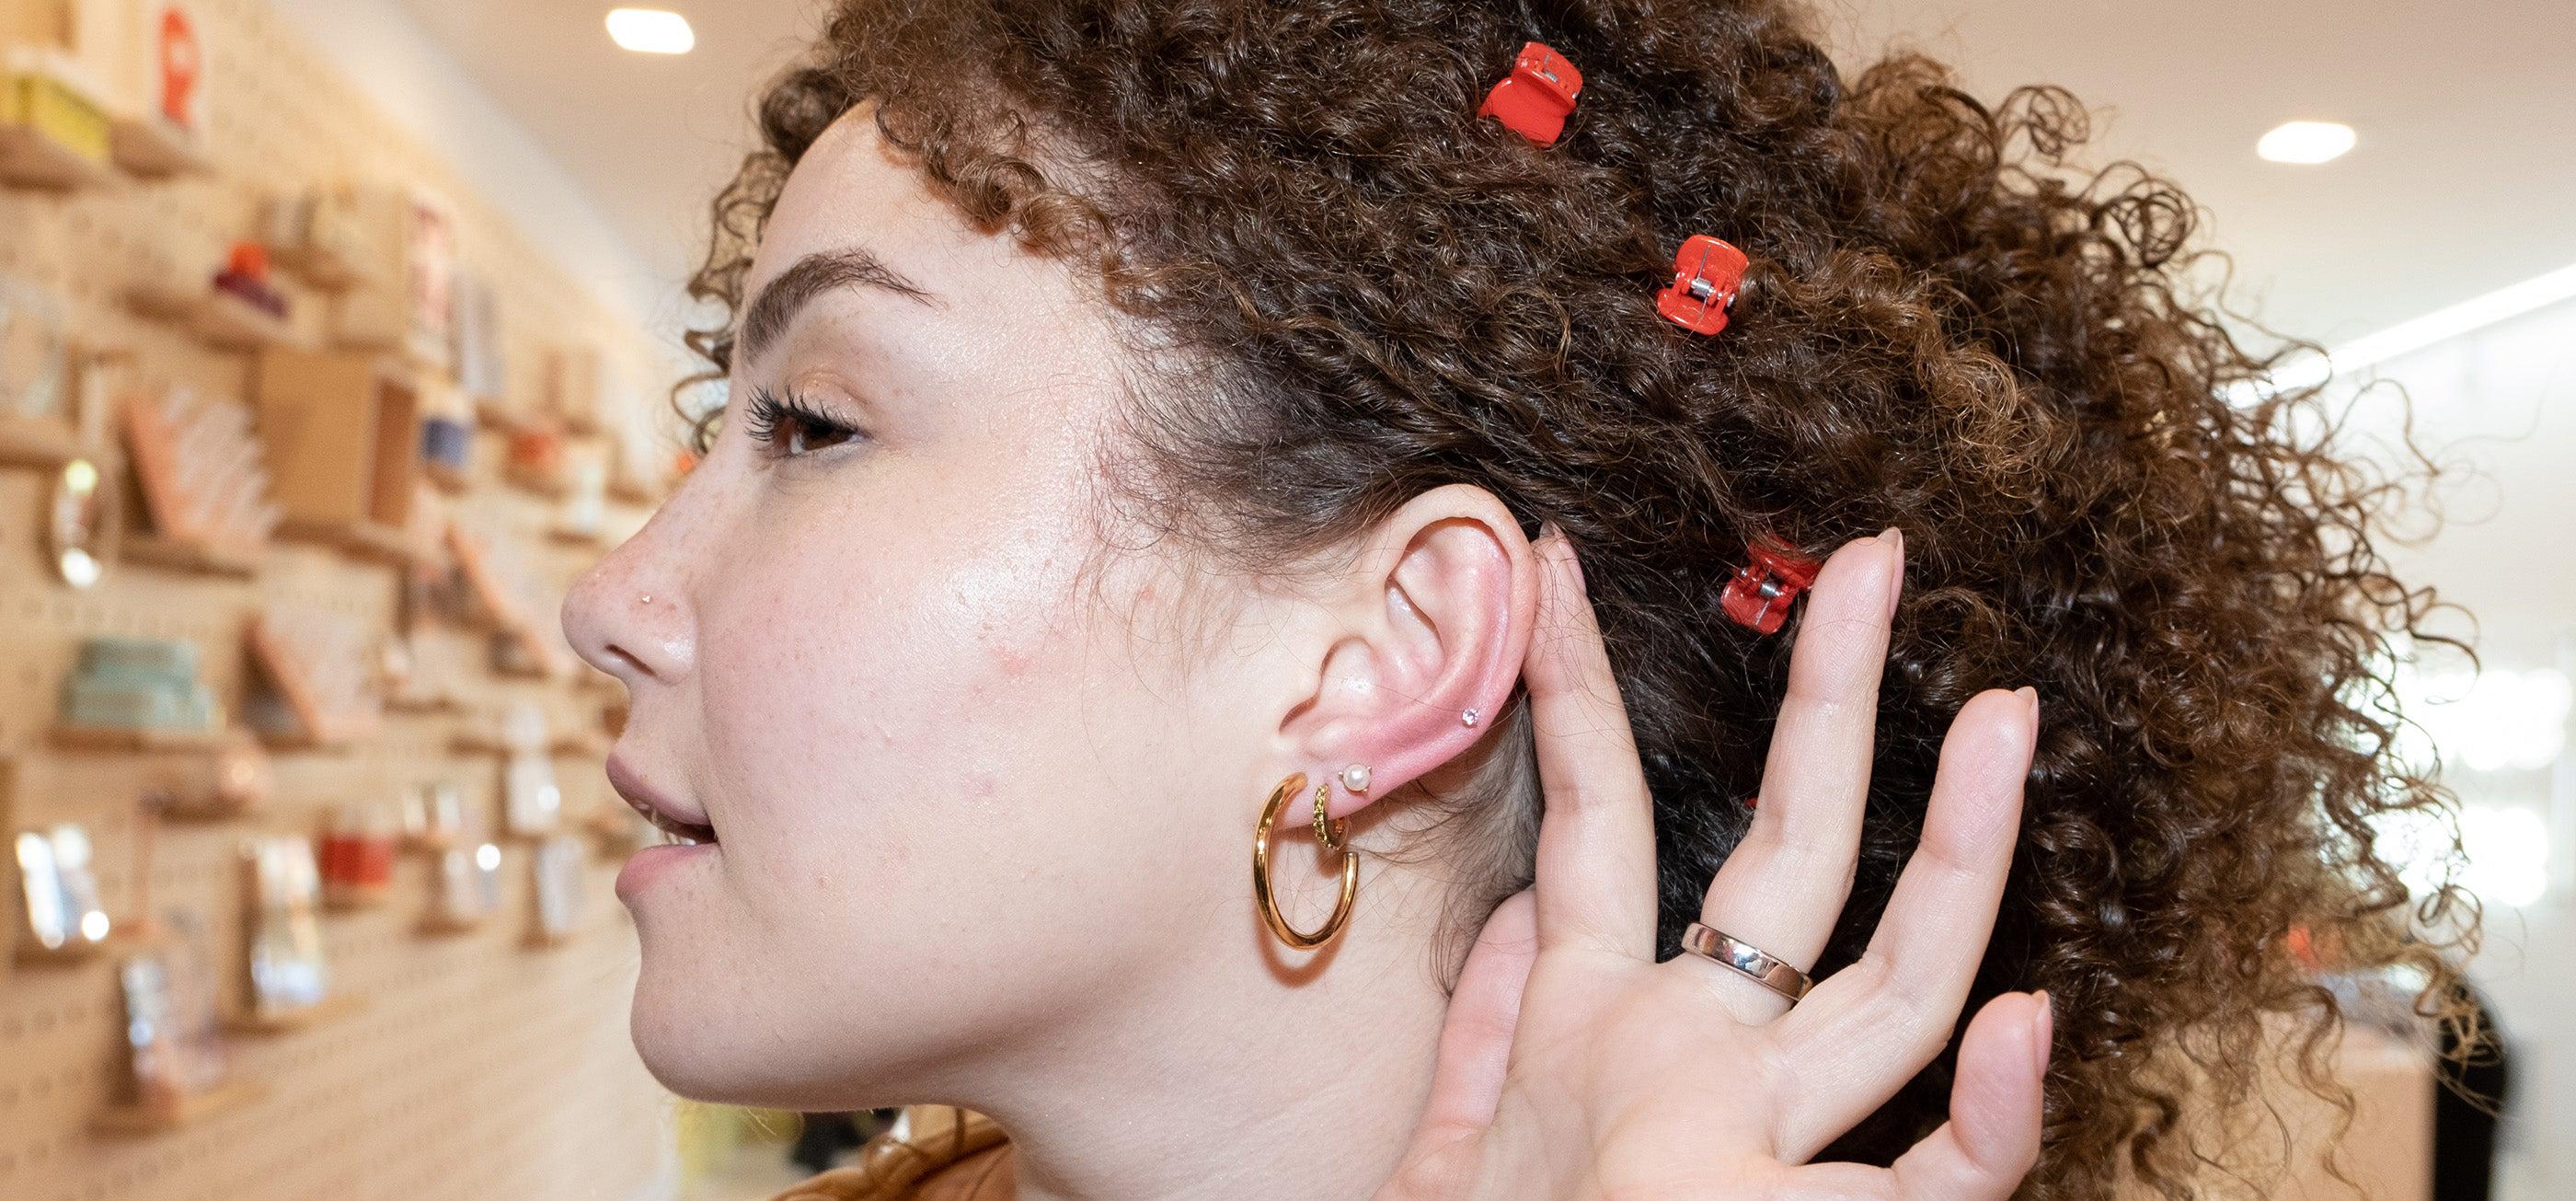 Waterproof Earrings | Hey Harper Shop: Waterproof Jewelry